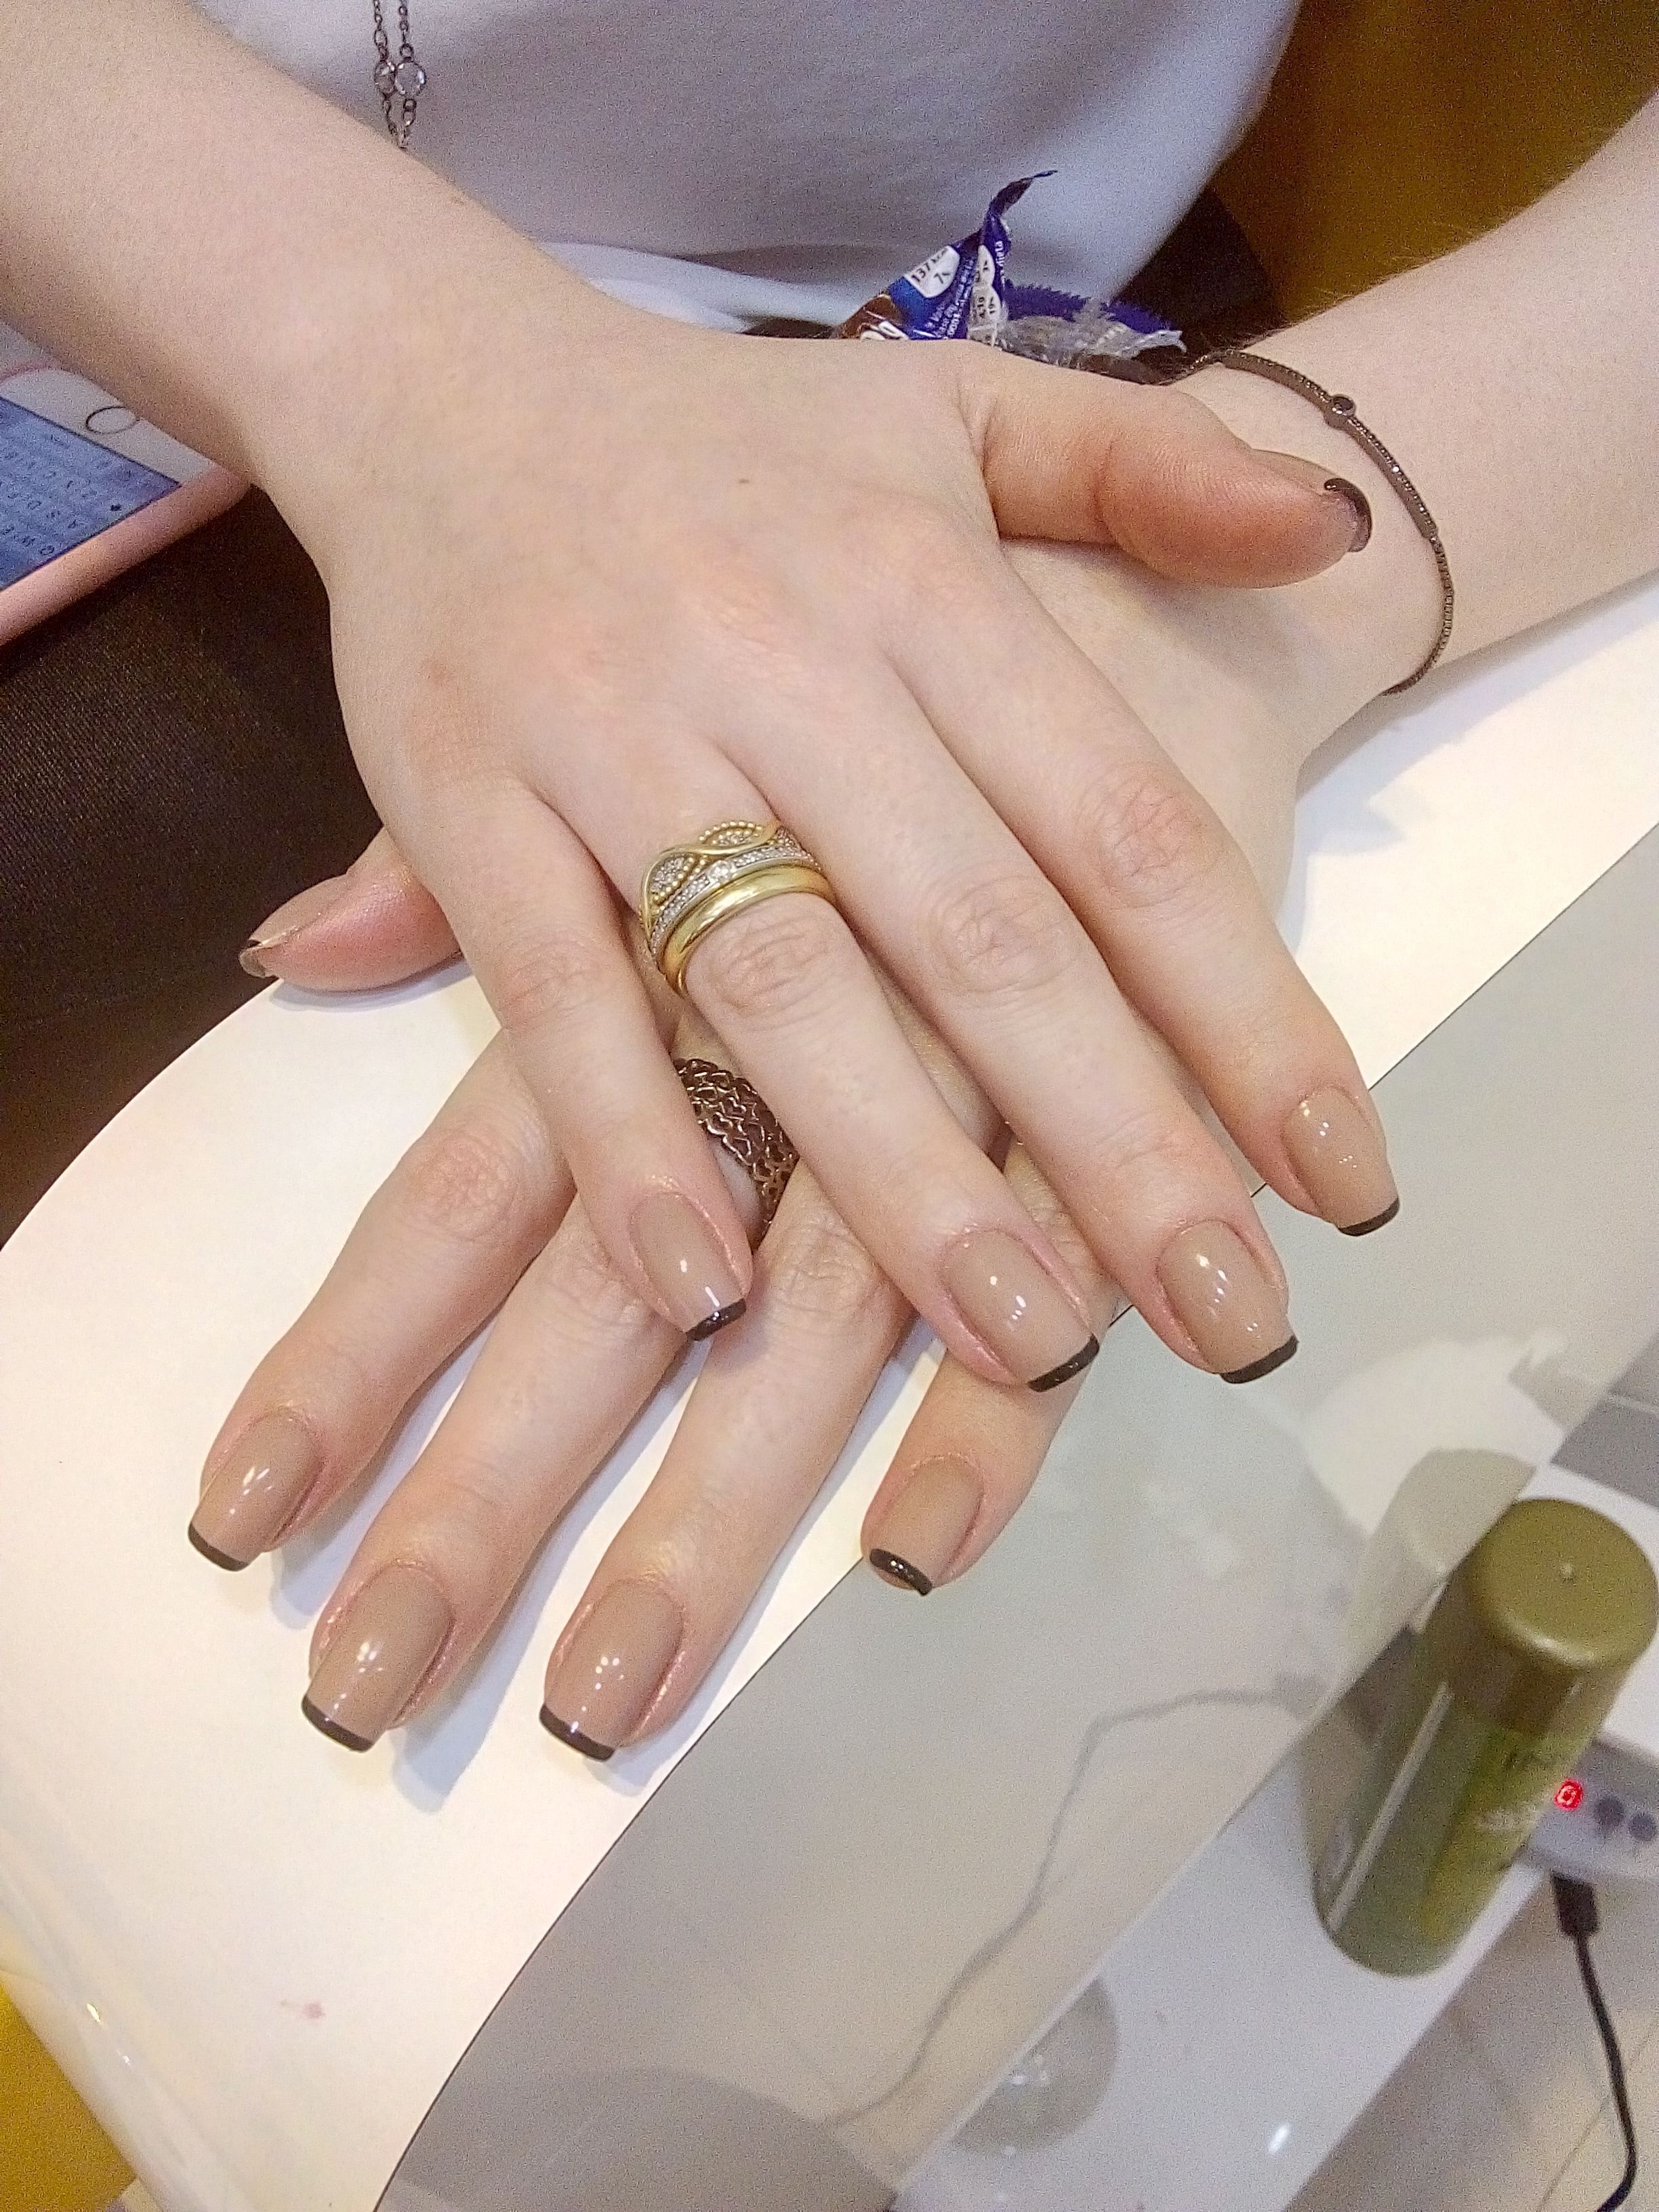 Esmaltação francesinha 
Nude/preto manicure e pedicure manicure e pedicure manicure e pedicure manicure e pedicure manicure e pedicure manicure e pedicure